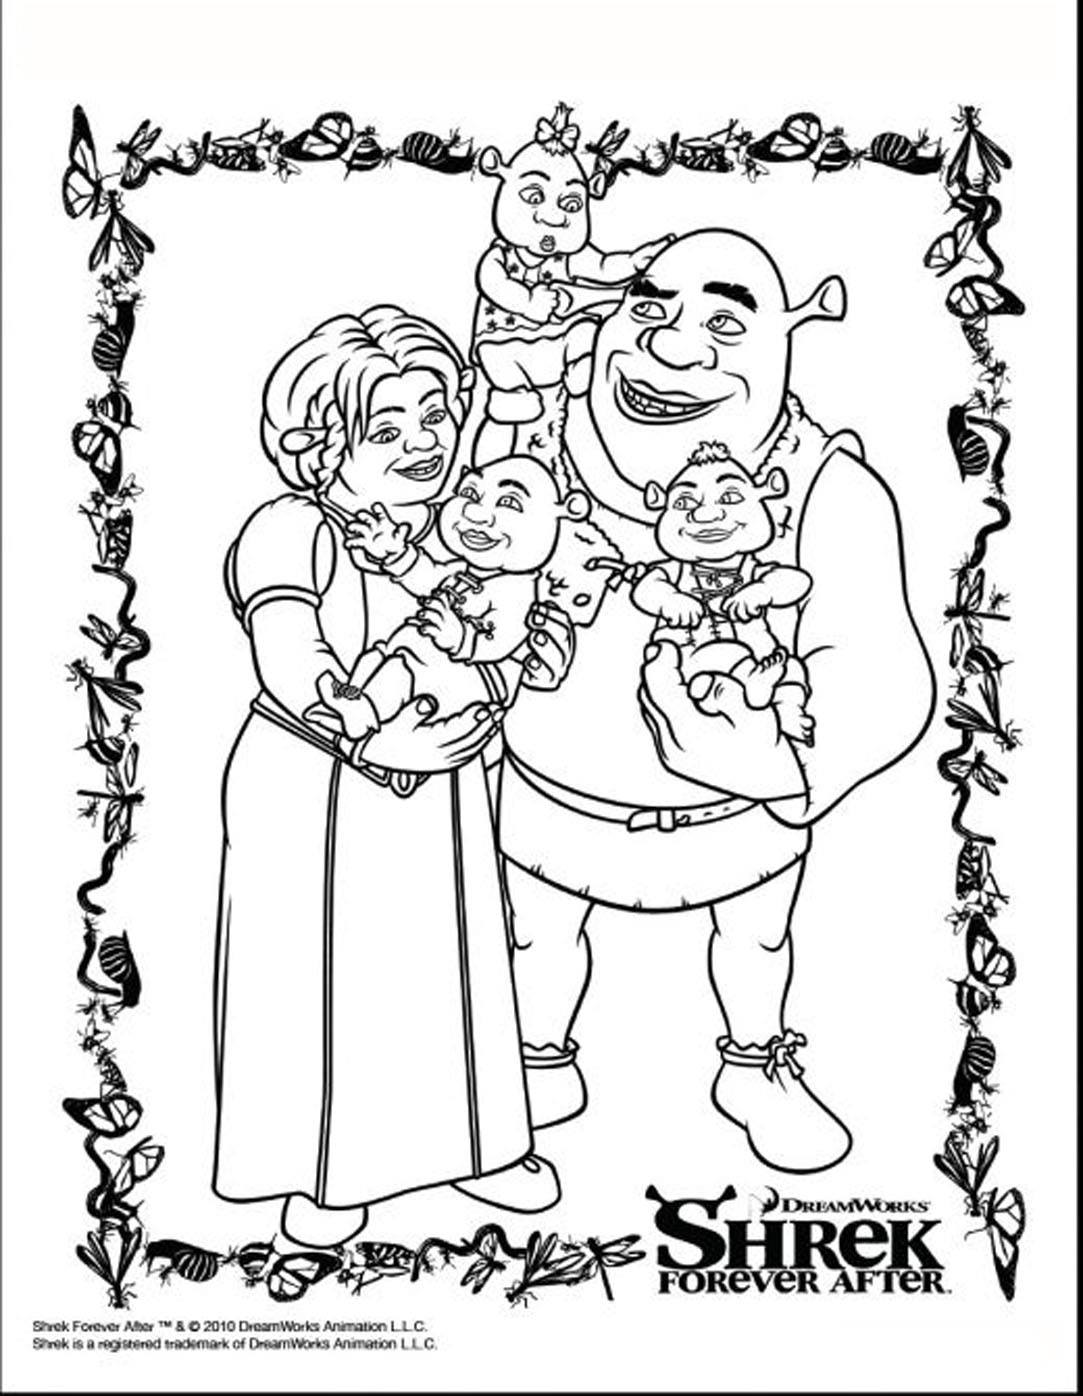 Bonito retrato de la familia Shrek